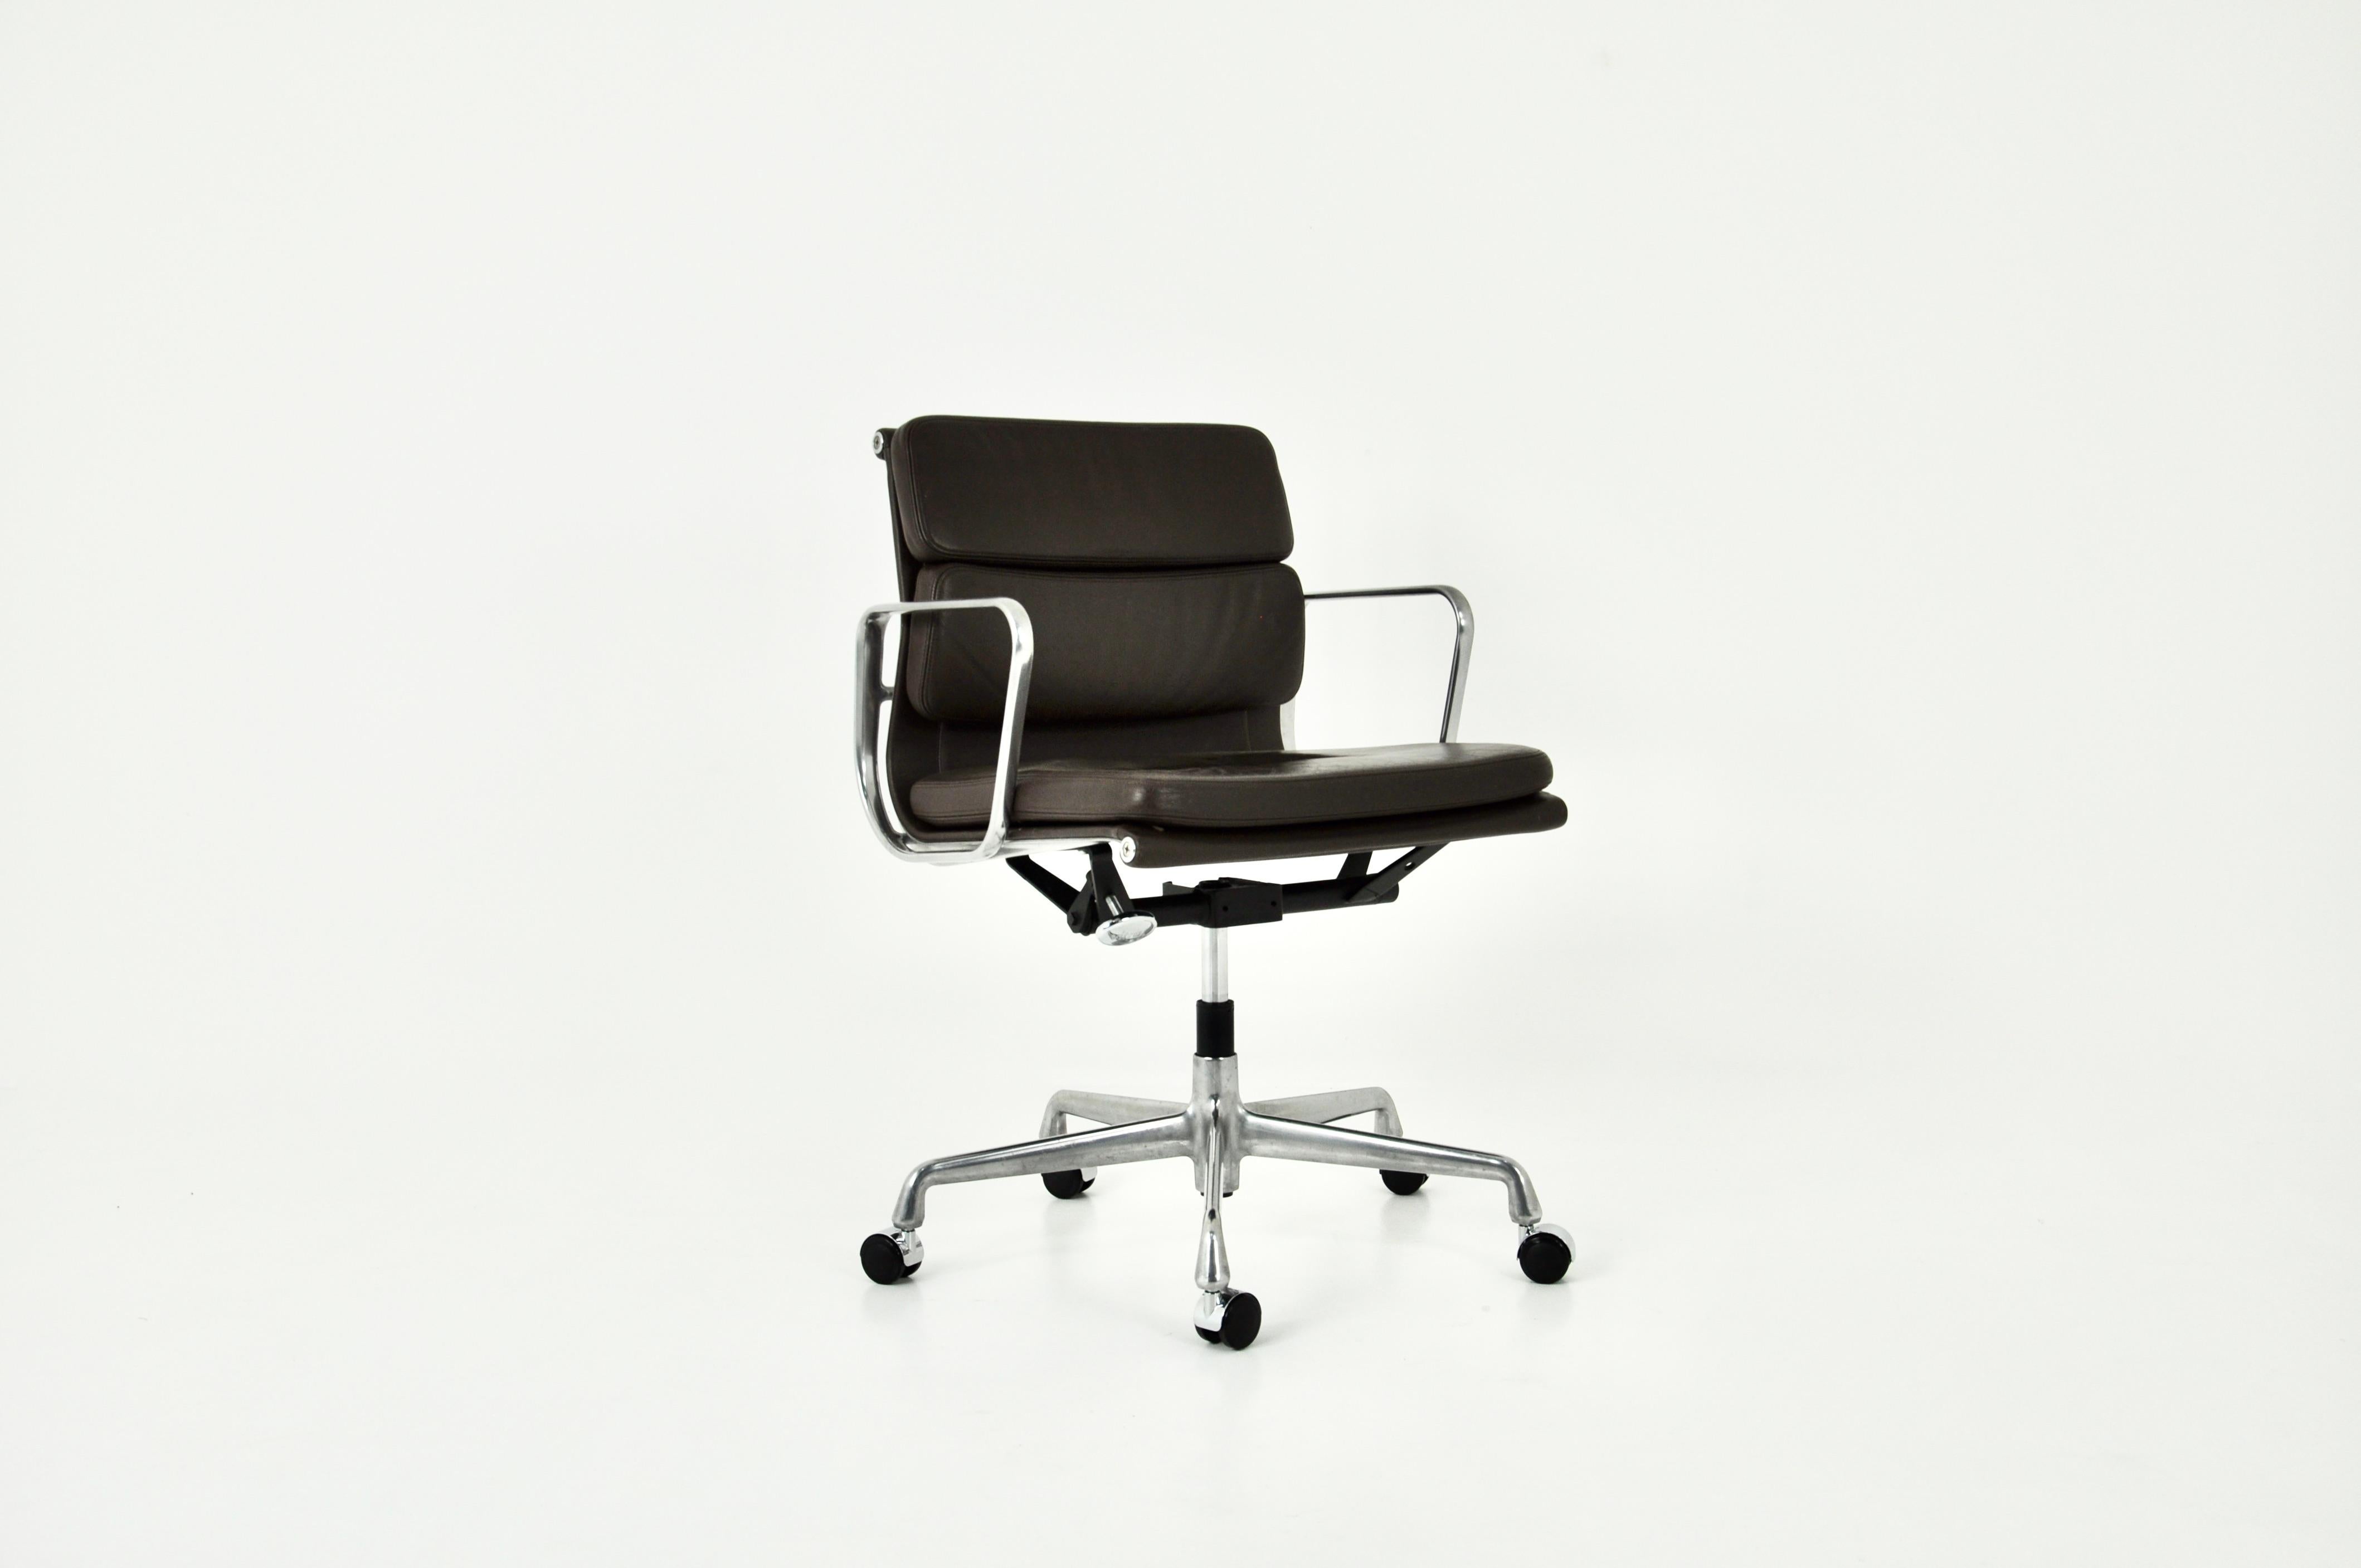 Schreibtischstuhl aus braunem Leder mit Aluminiumfuß. Sitzhöhe: 53 cm. Vitra gestempelt. Abnutzung durch die Zeit und das Alter der Stühle.